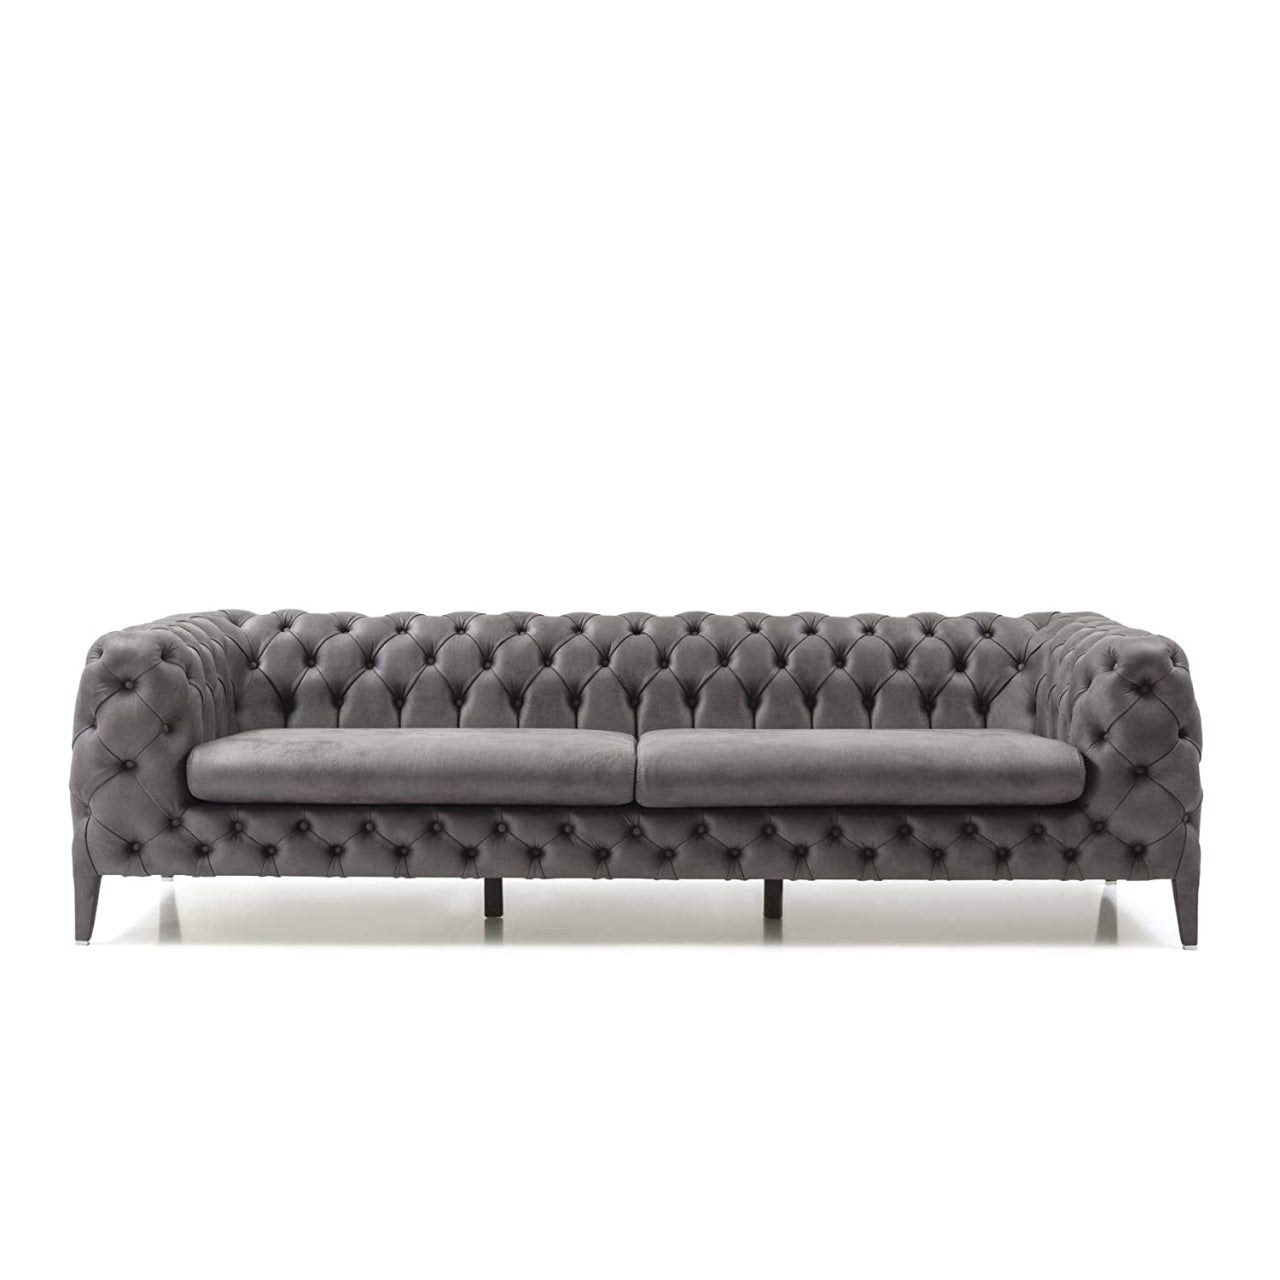 Designer Sofa Set- 3+1 Fabric 4 Seater Luxury Furniture Sofa Set (Grey & Cream)